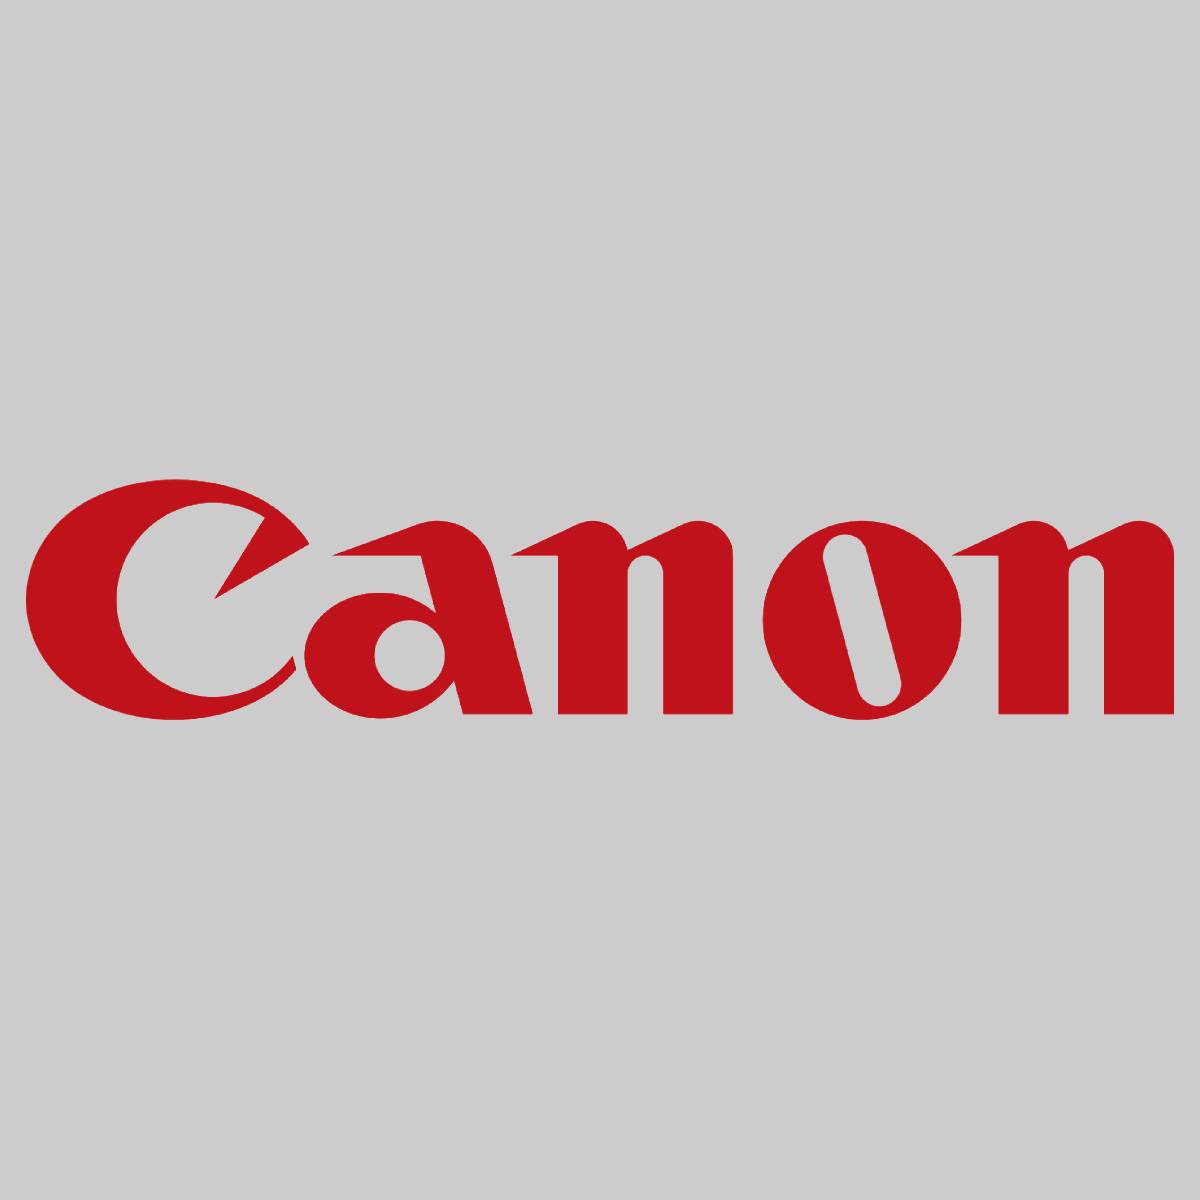 ''Original Canon C-EXV 17 Toner Magenta 0260B002 iR C4080 iR C4080i iR C4580 iR